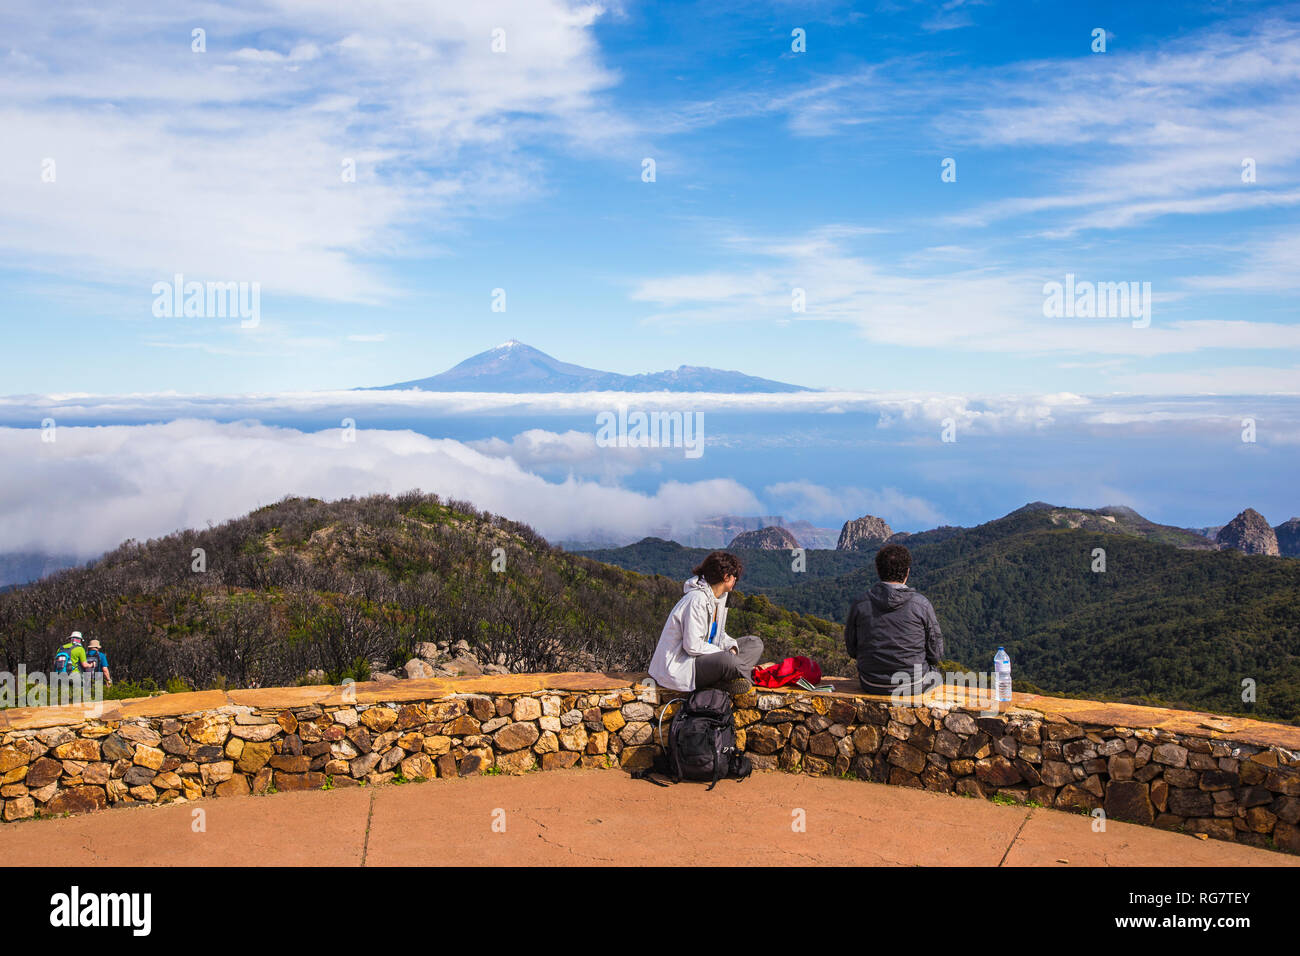 Randonneurs sur le sommet dans le Parc National de Garajonay, volcan du Teide à Tenerife, La Gomera, Canary Islands, Spain, Europe, Wanderer auf dem Gipfel im Natio Banque D'Images